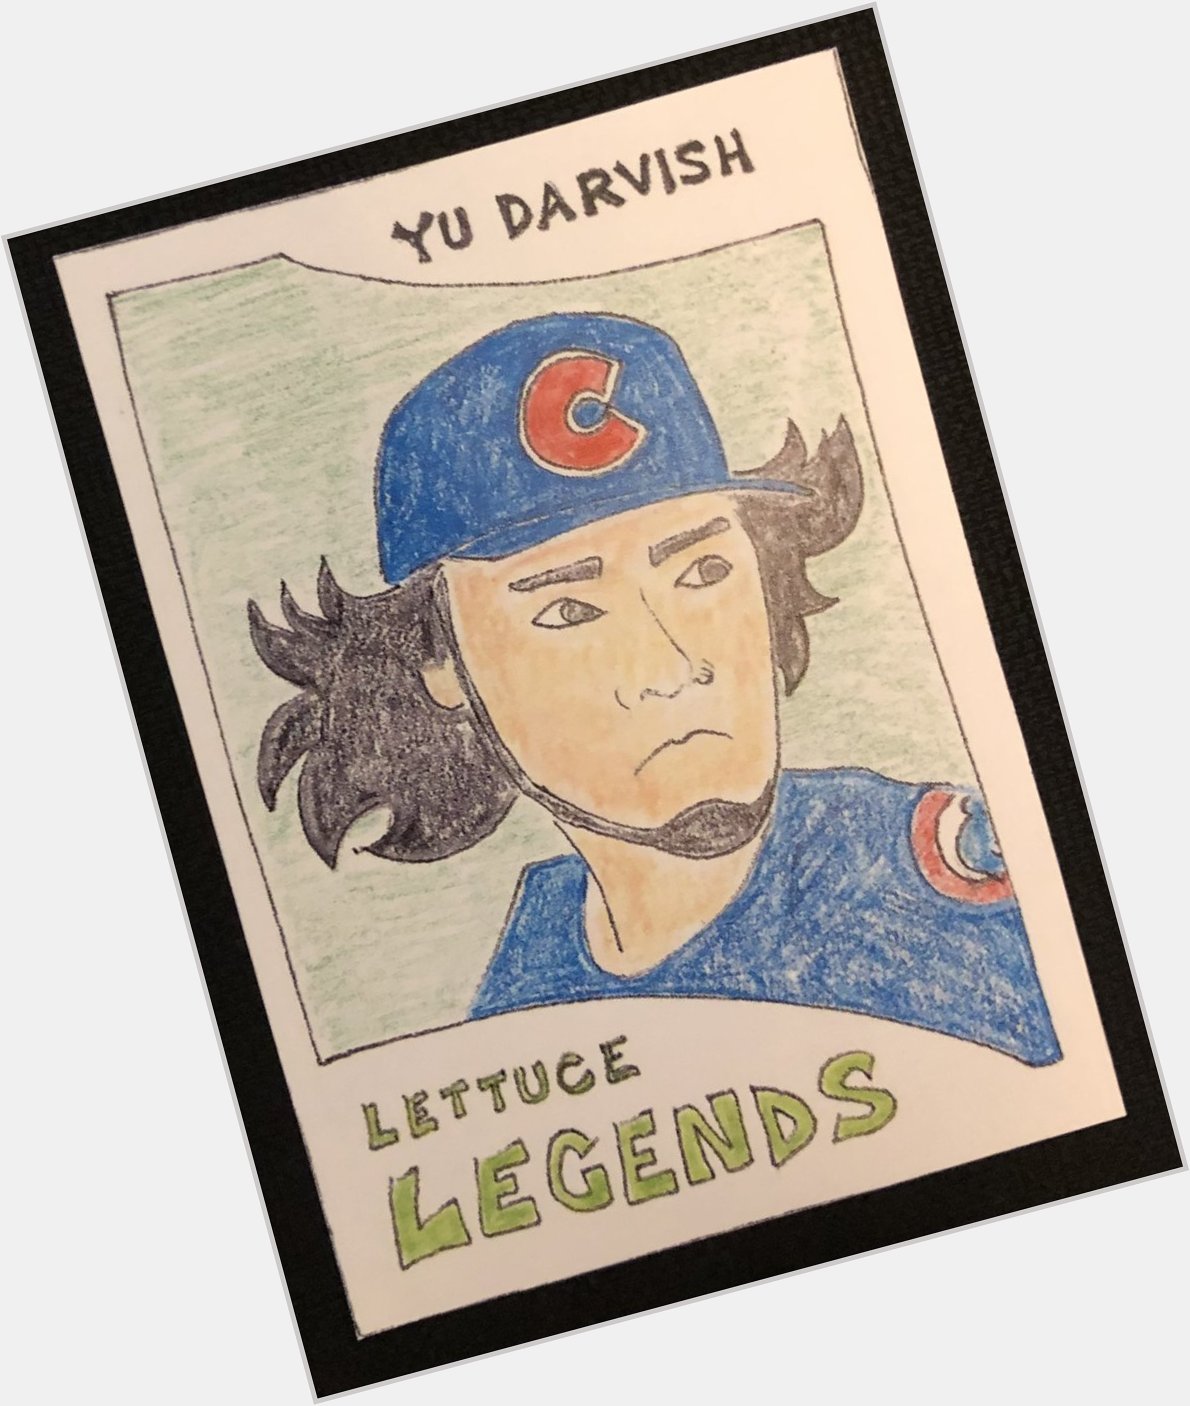 Happy Birthday to Lettuce Legend, Yu Darvish! 